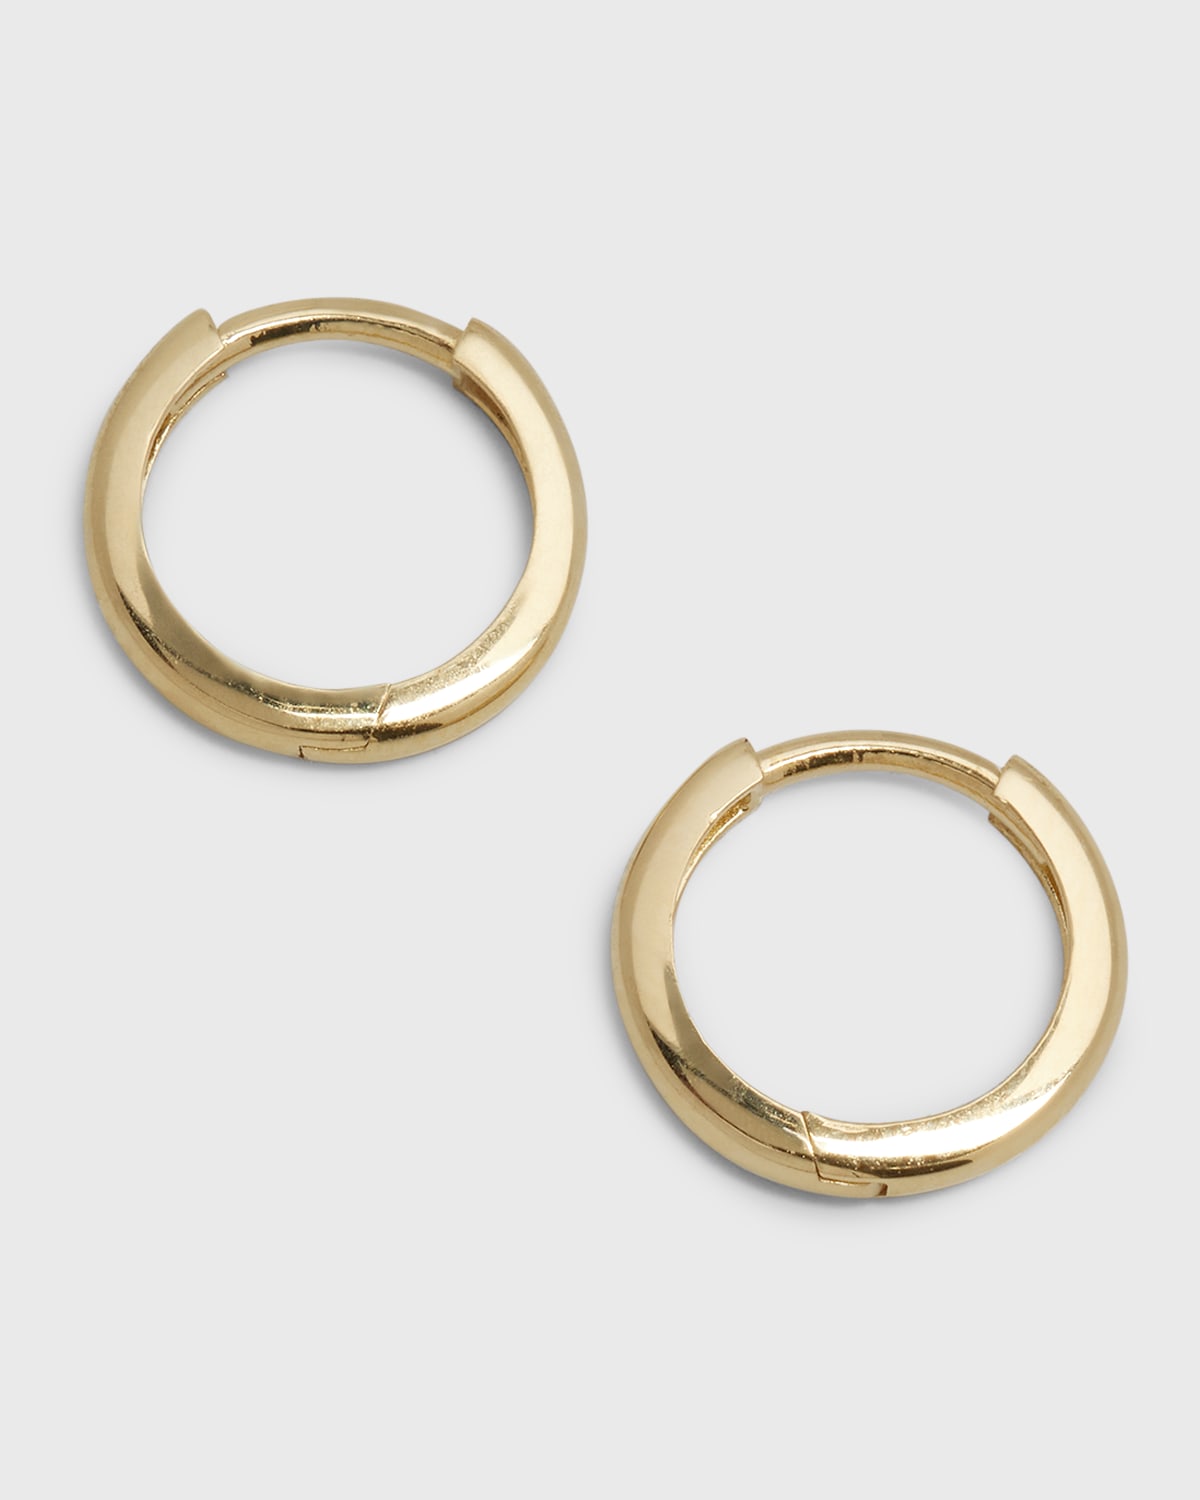 14k Gold Small Huggie Earrings